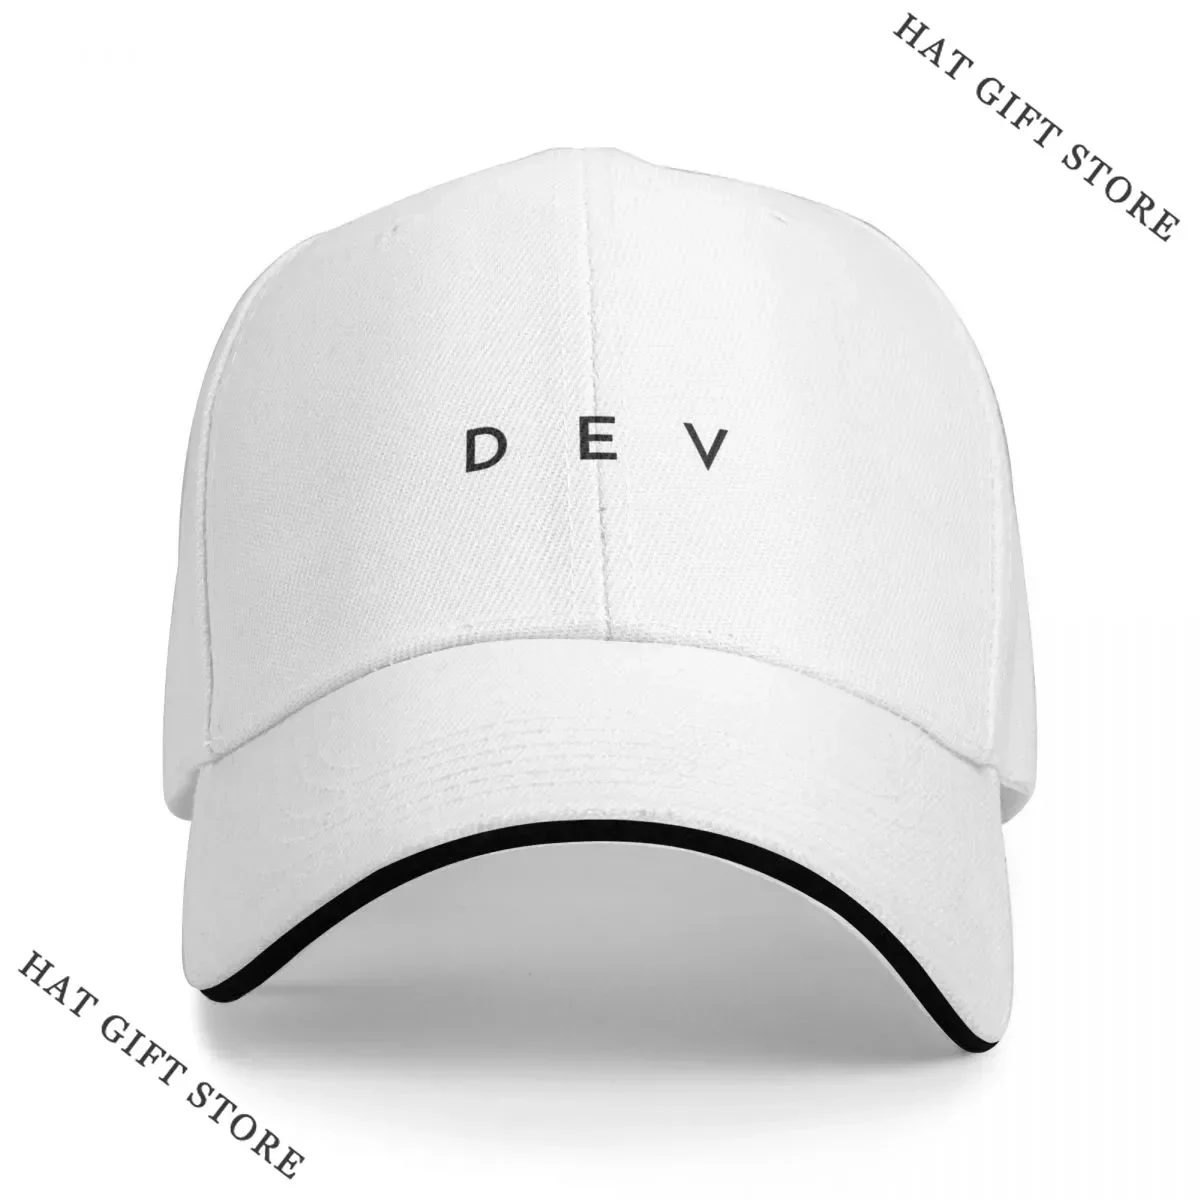 

Best Dev (minimal) (Inverted) Cap Baseball Cap gentleman hat Best hat hats baseball cap trucker hats for men Women's